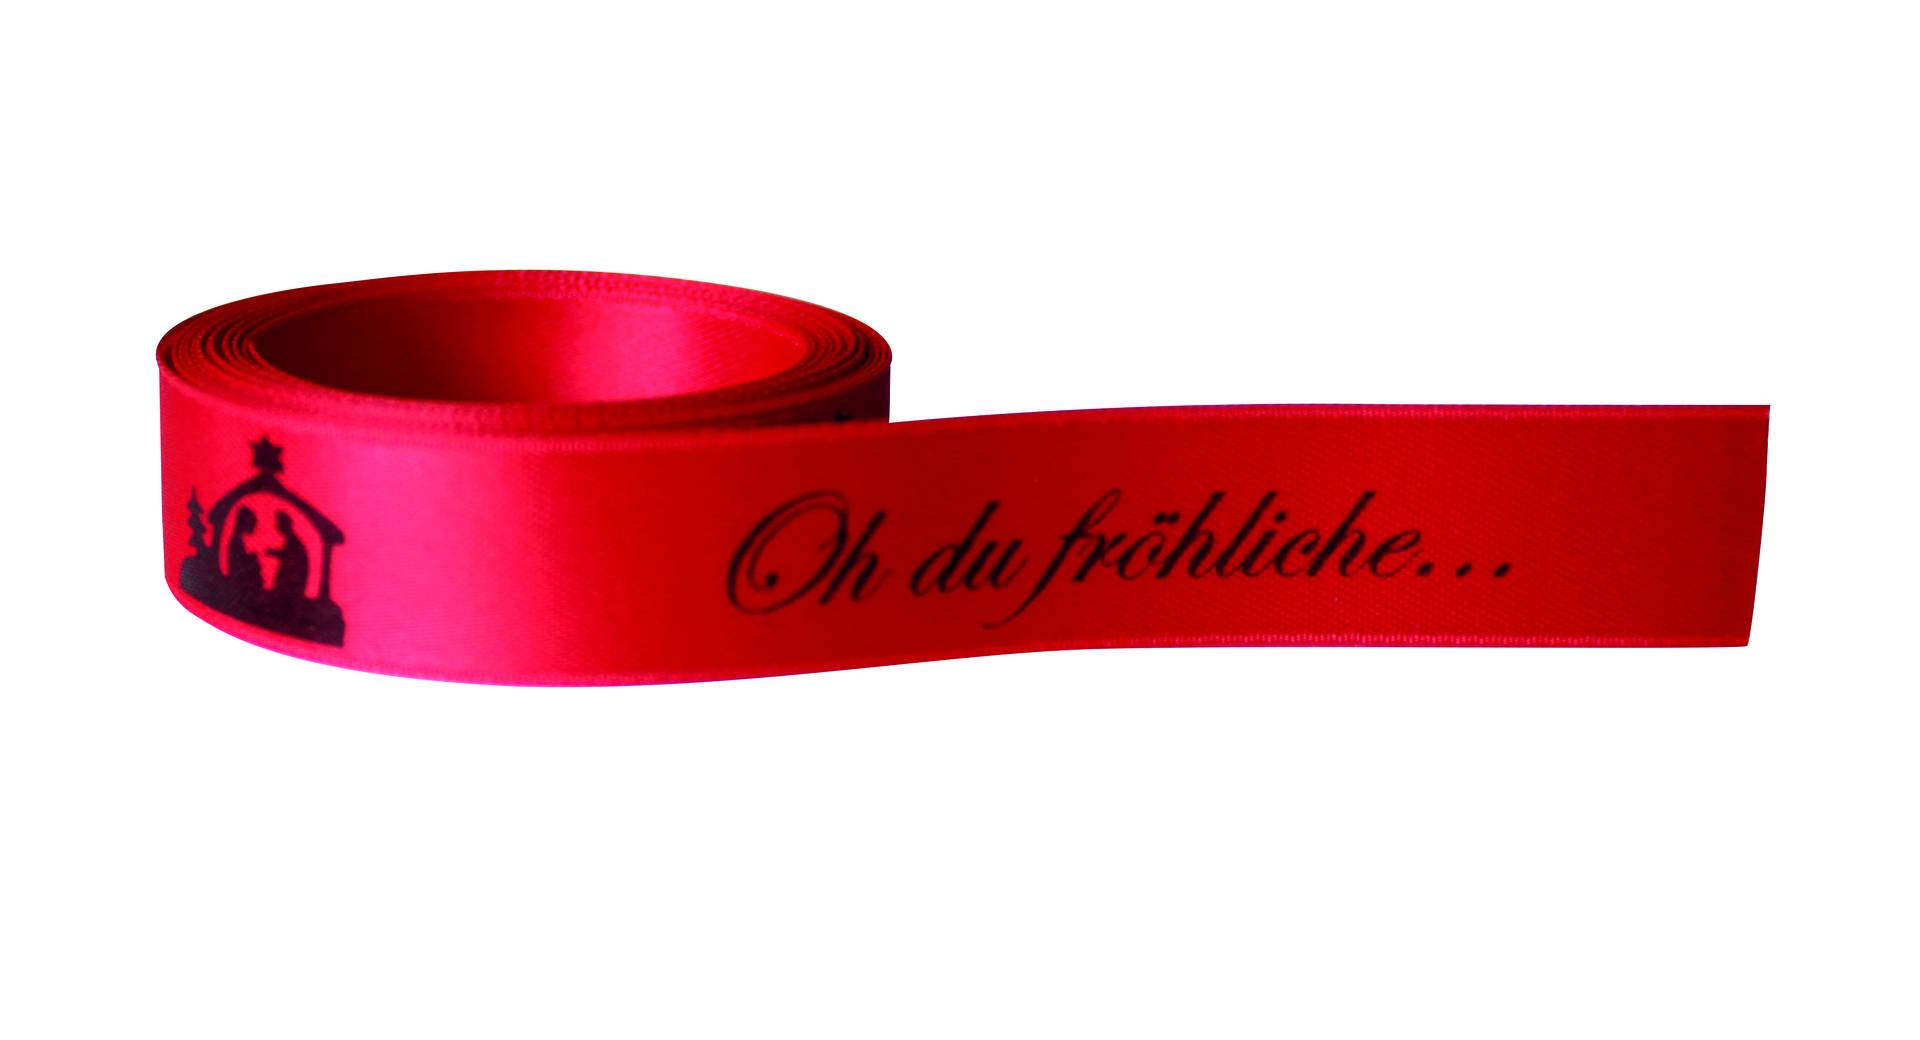 Schleifenband "Oh du fröhliche" von Confiserie Burg Lauenstein GmbH